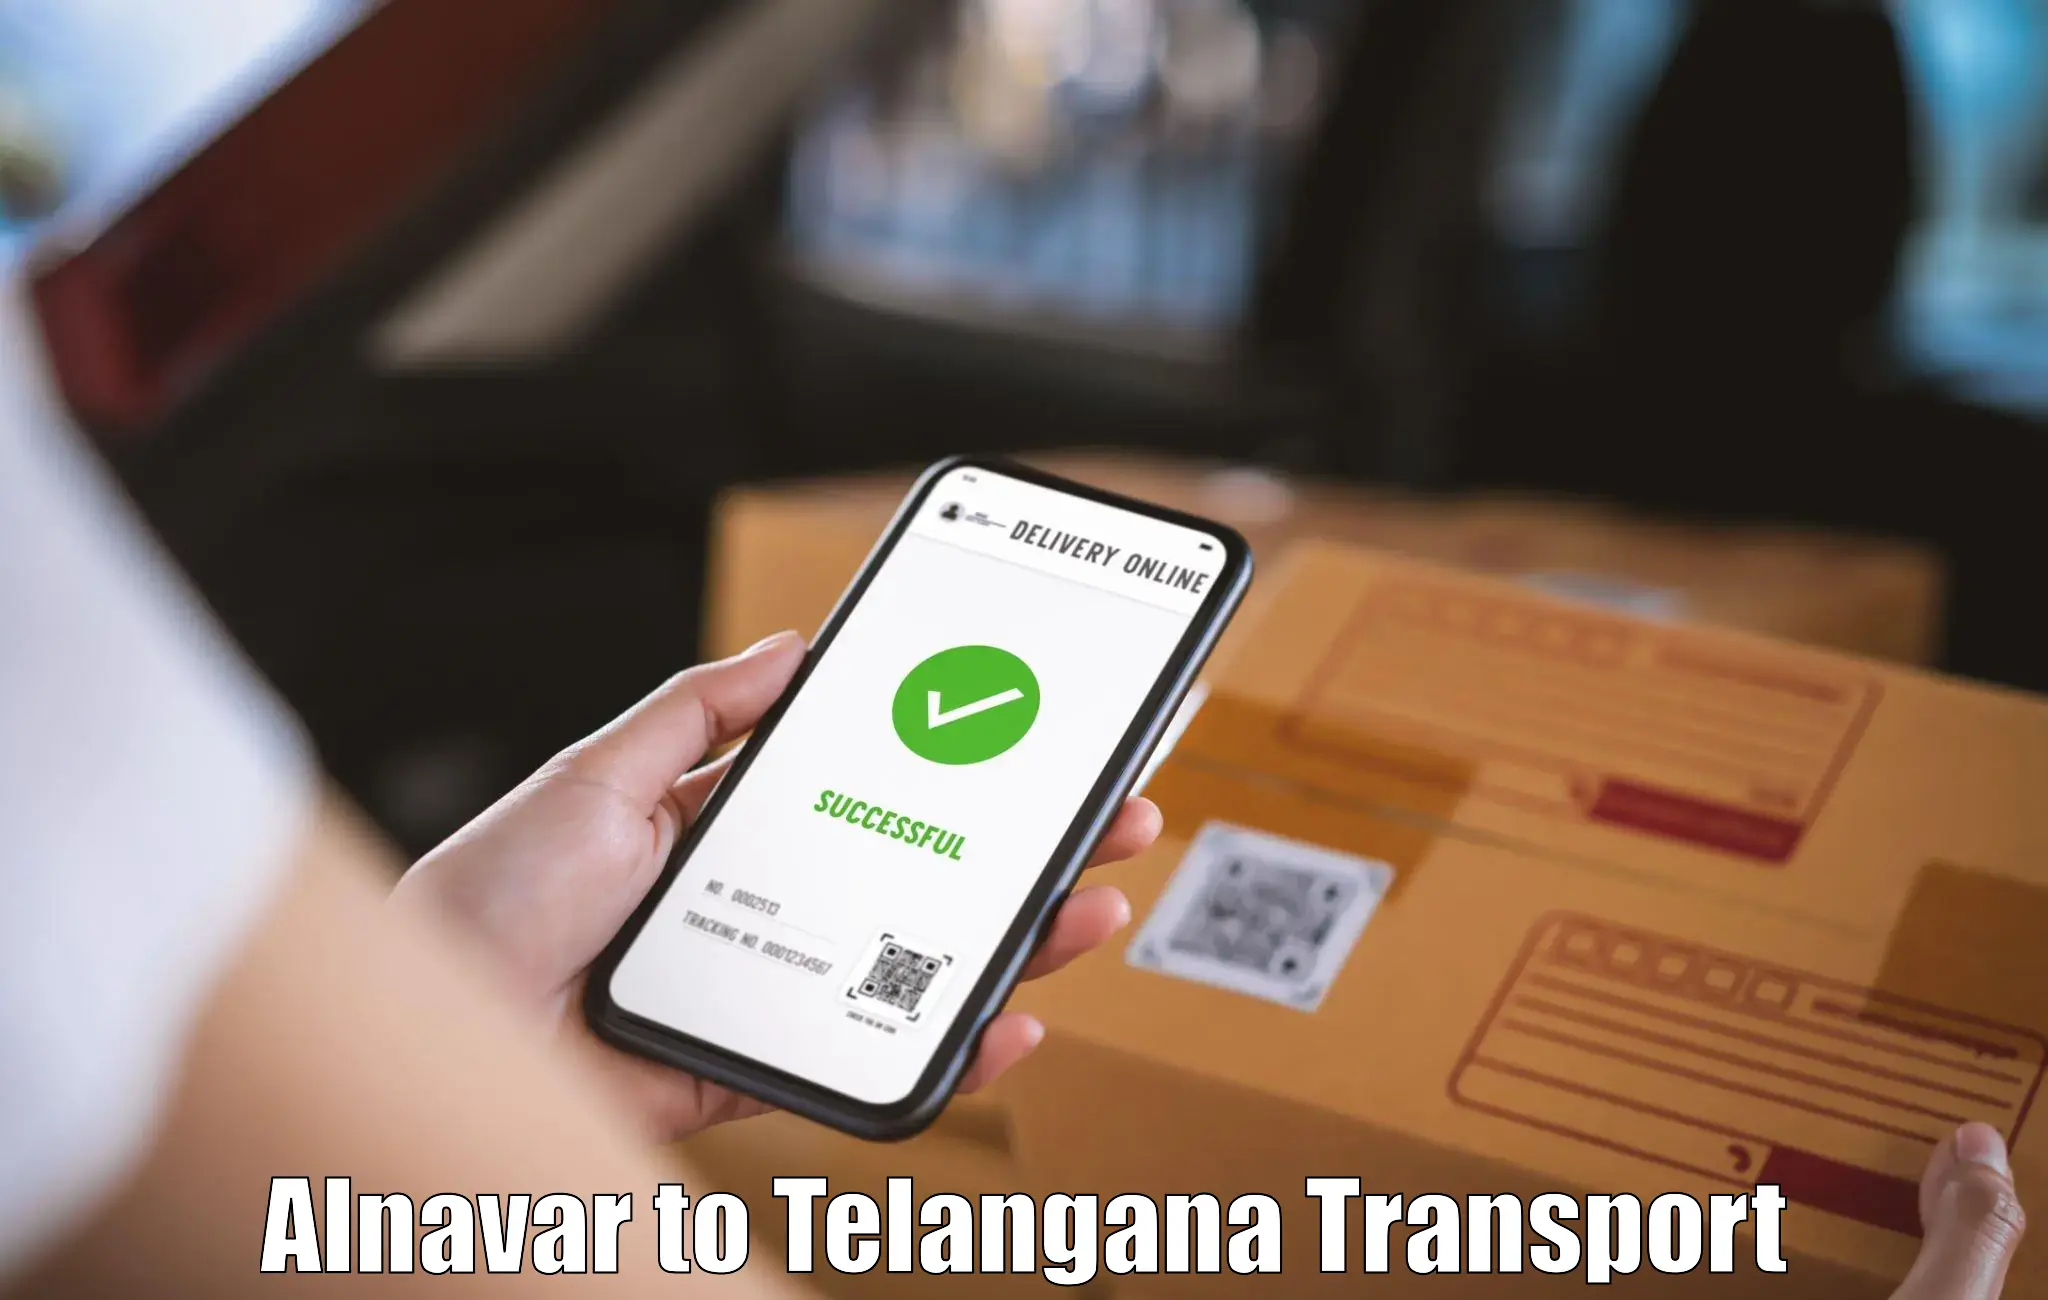 Delivery service Alnavar to Karimnagar